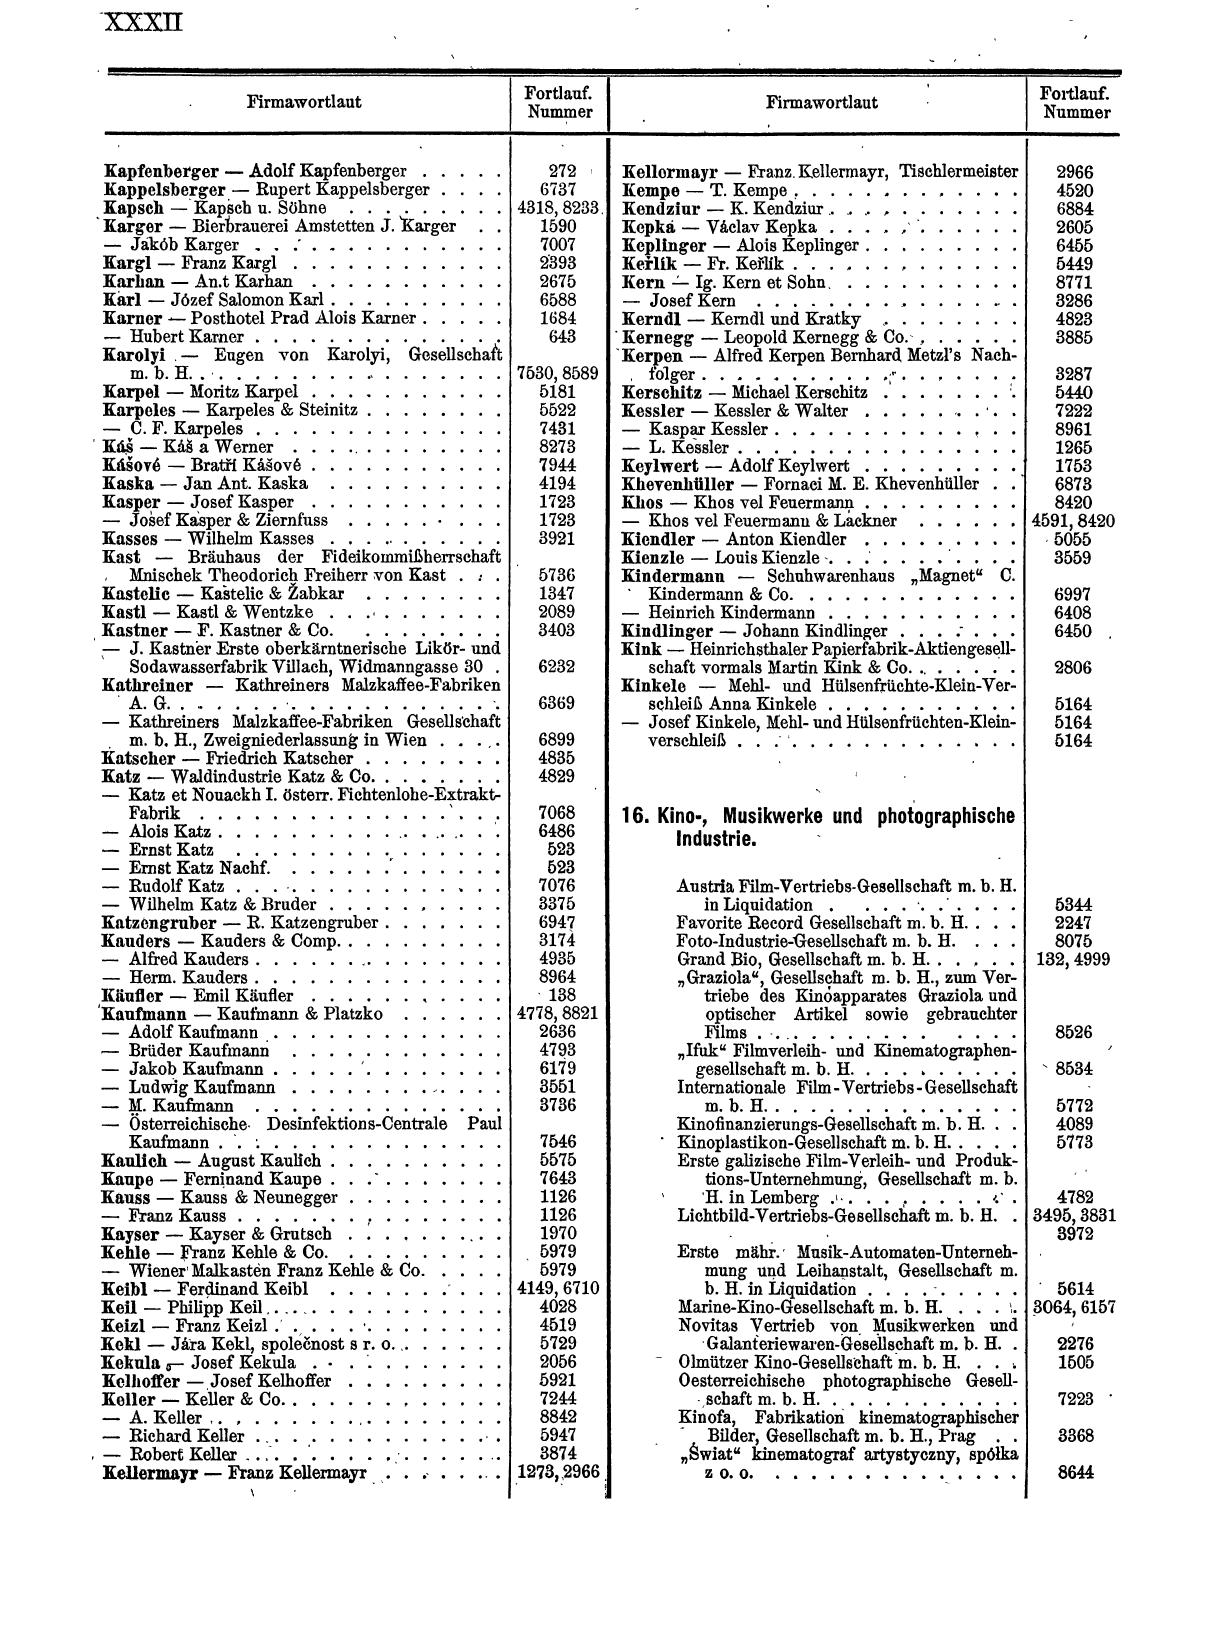 Zentralblatt für die Eintragungen in das Handelsregister 1913, Teil 1 - Seite 40